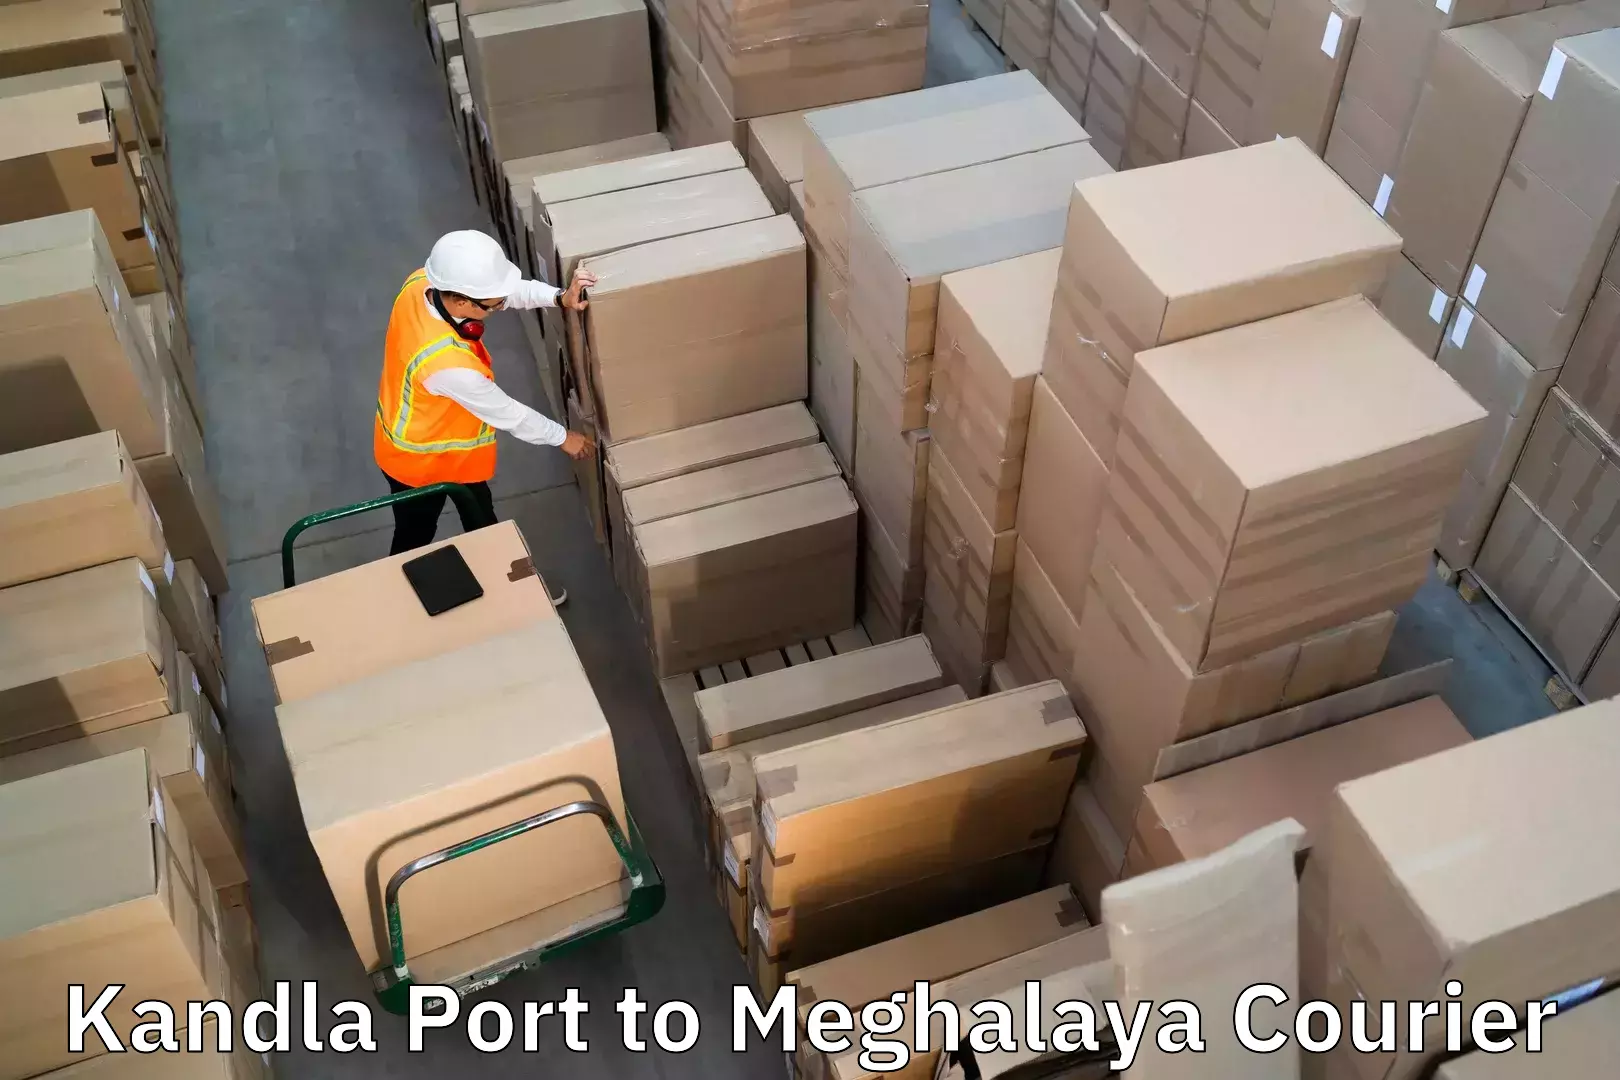 Luggage shipment specialists in Kandla Port to Jowai